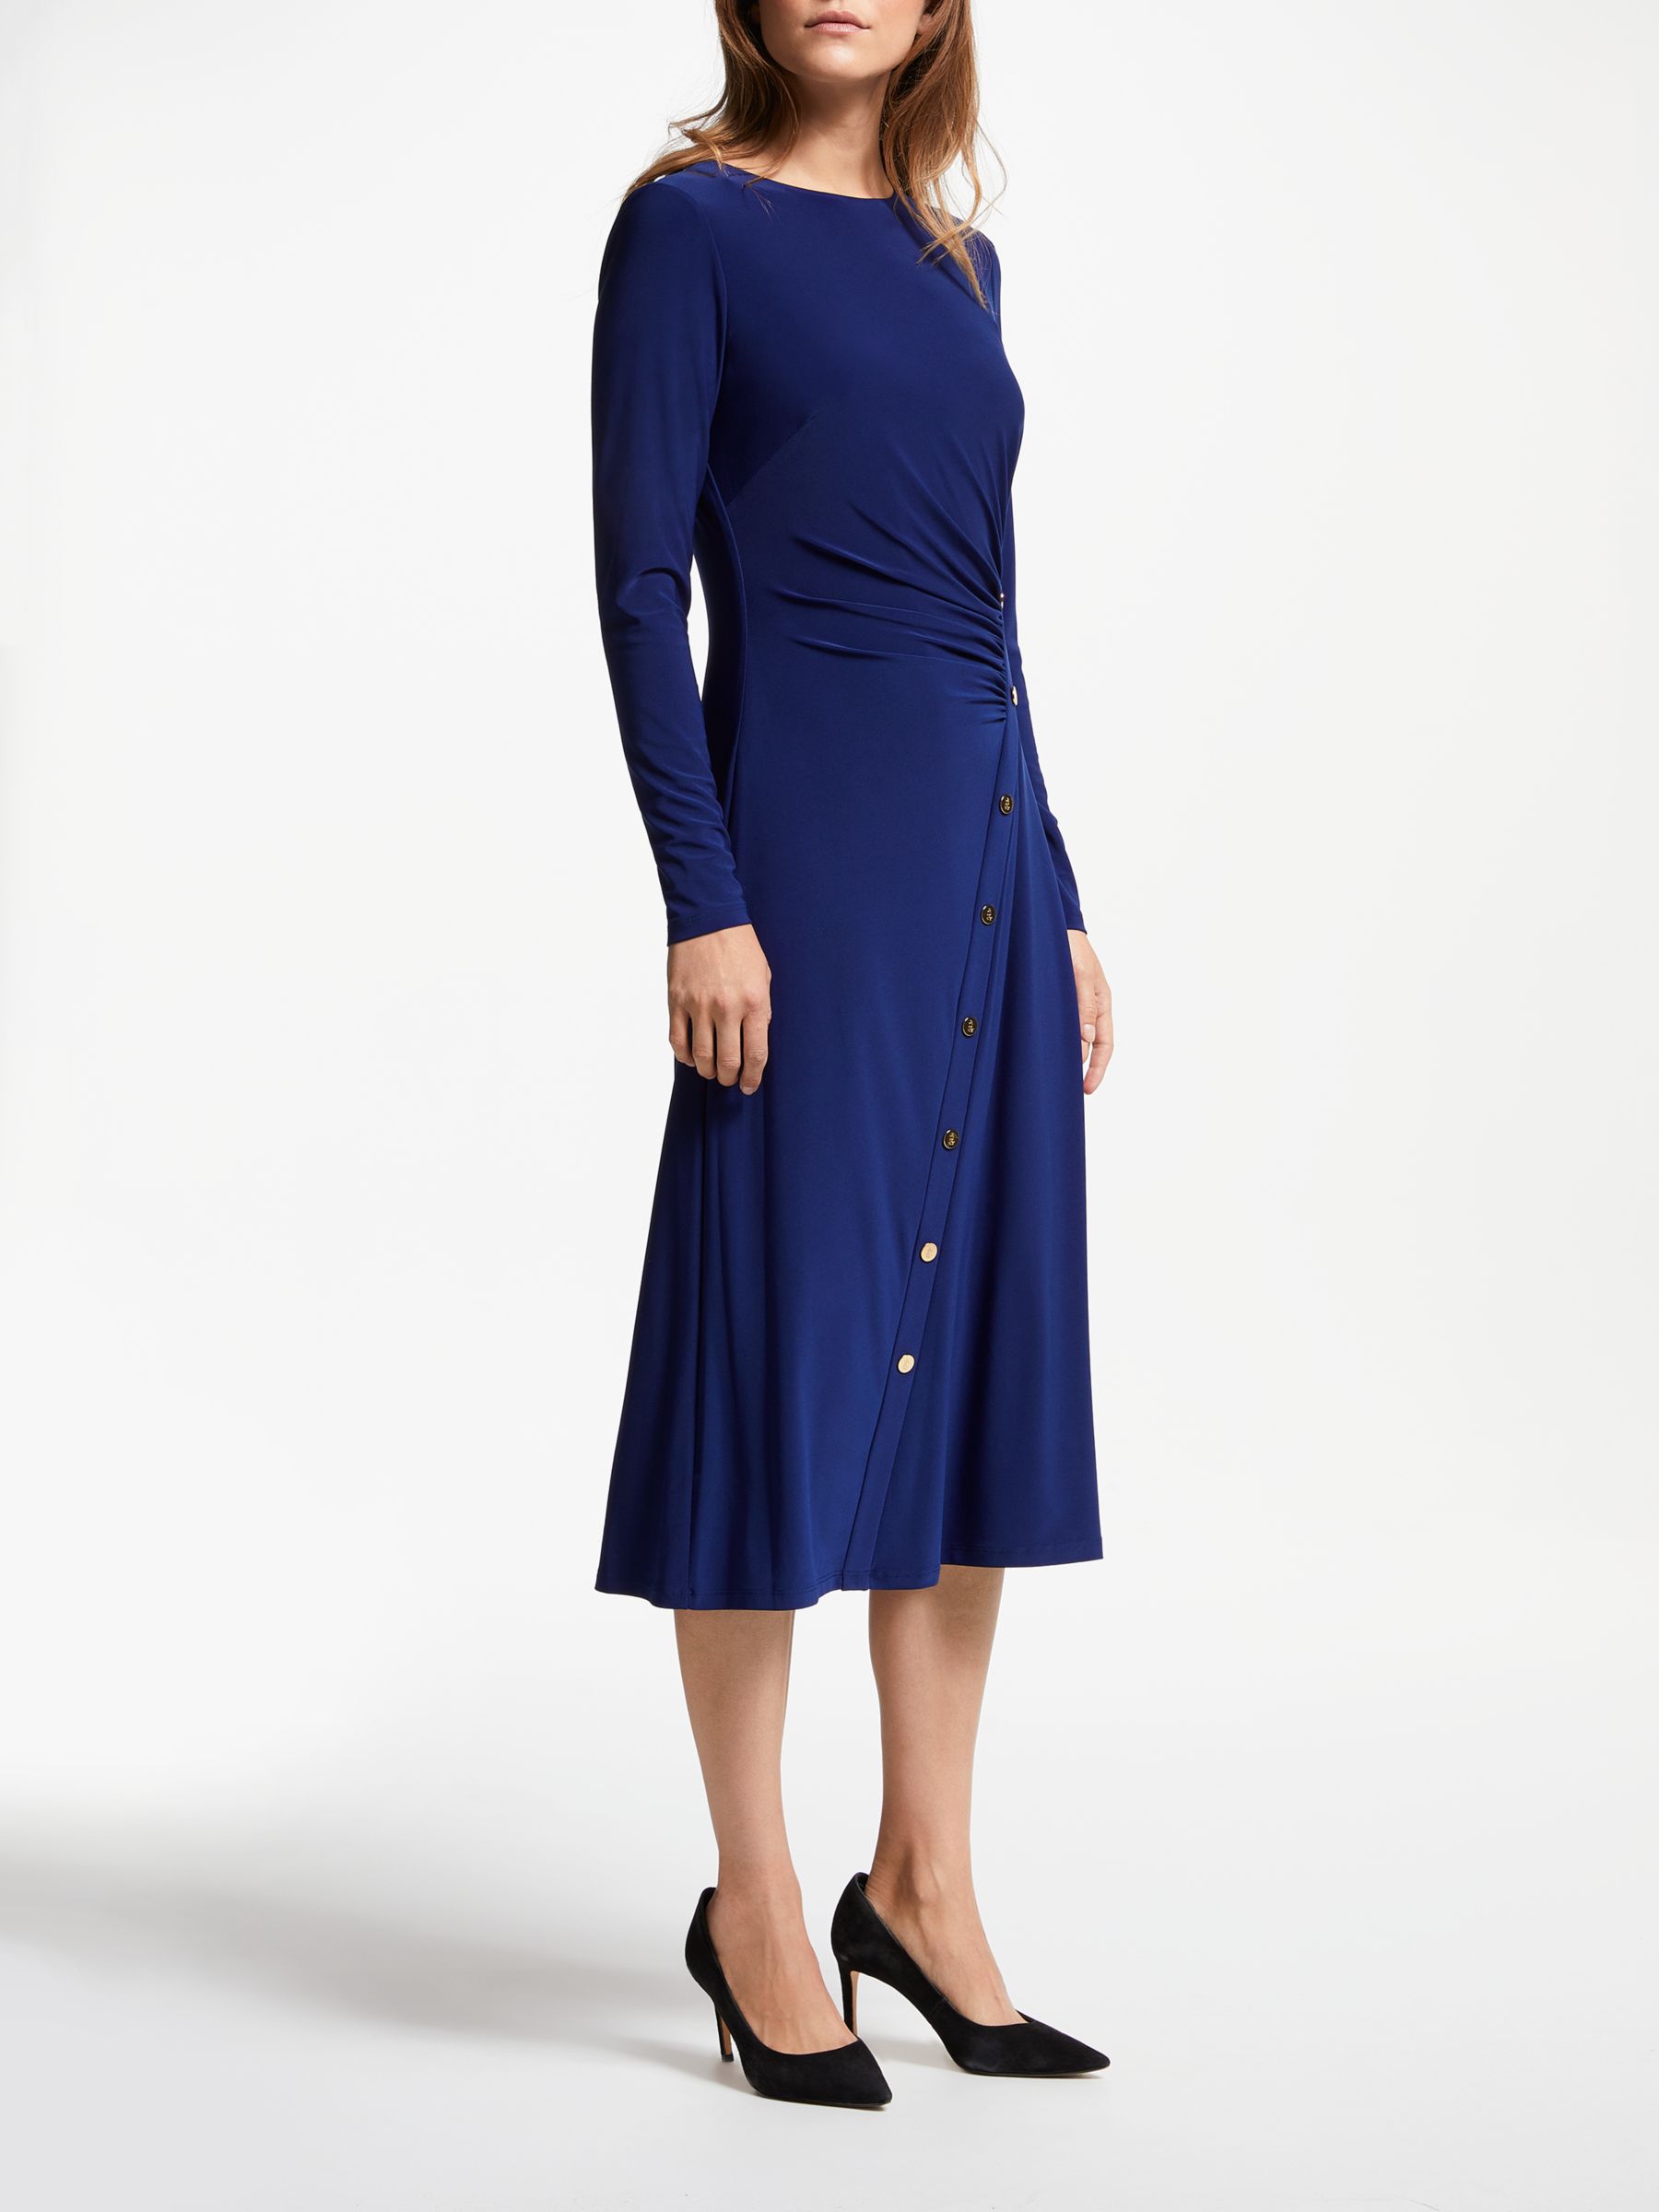 Lauren Ralph Lauren Roselle Long Sleeve Dress, Dutch Blue/Gold